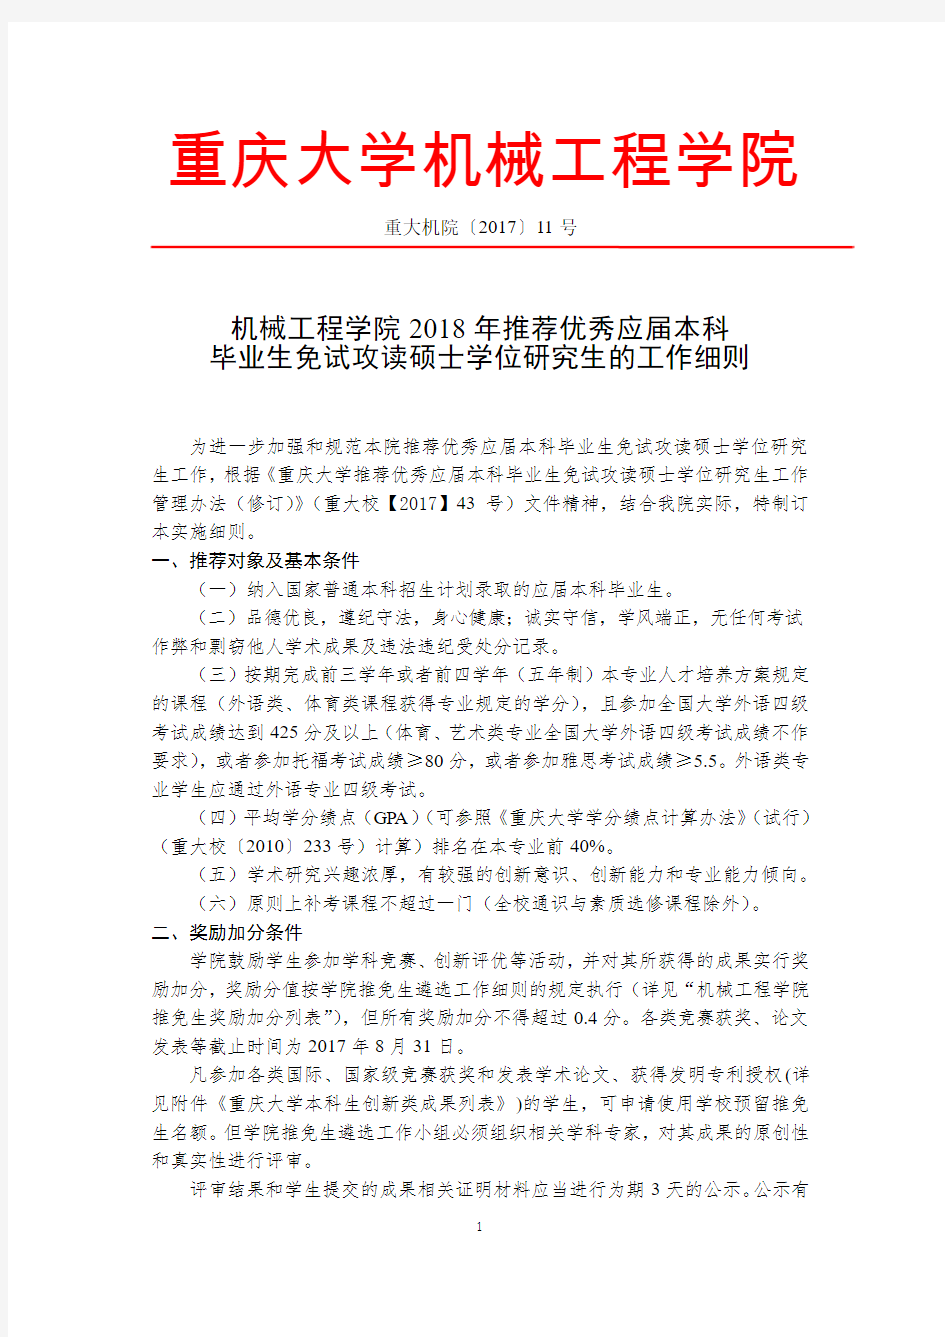 重庆大学机械工程学院2018年推荐优秀应届本科毕业生免试攻读硕士学位研究生的工作细则